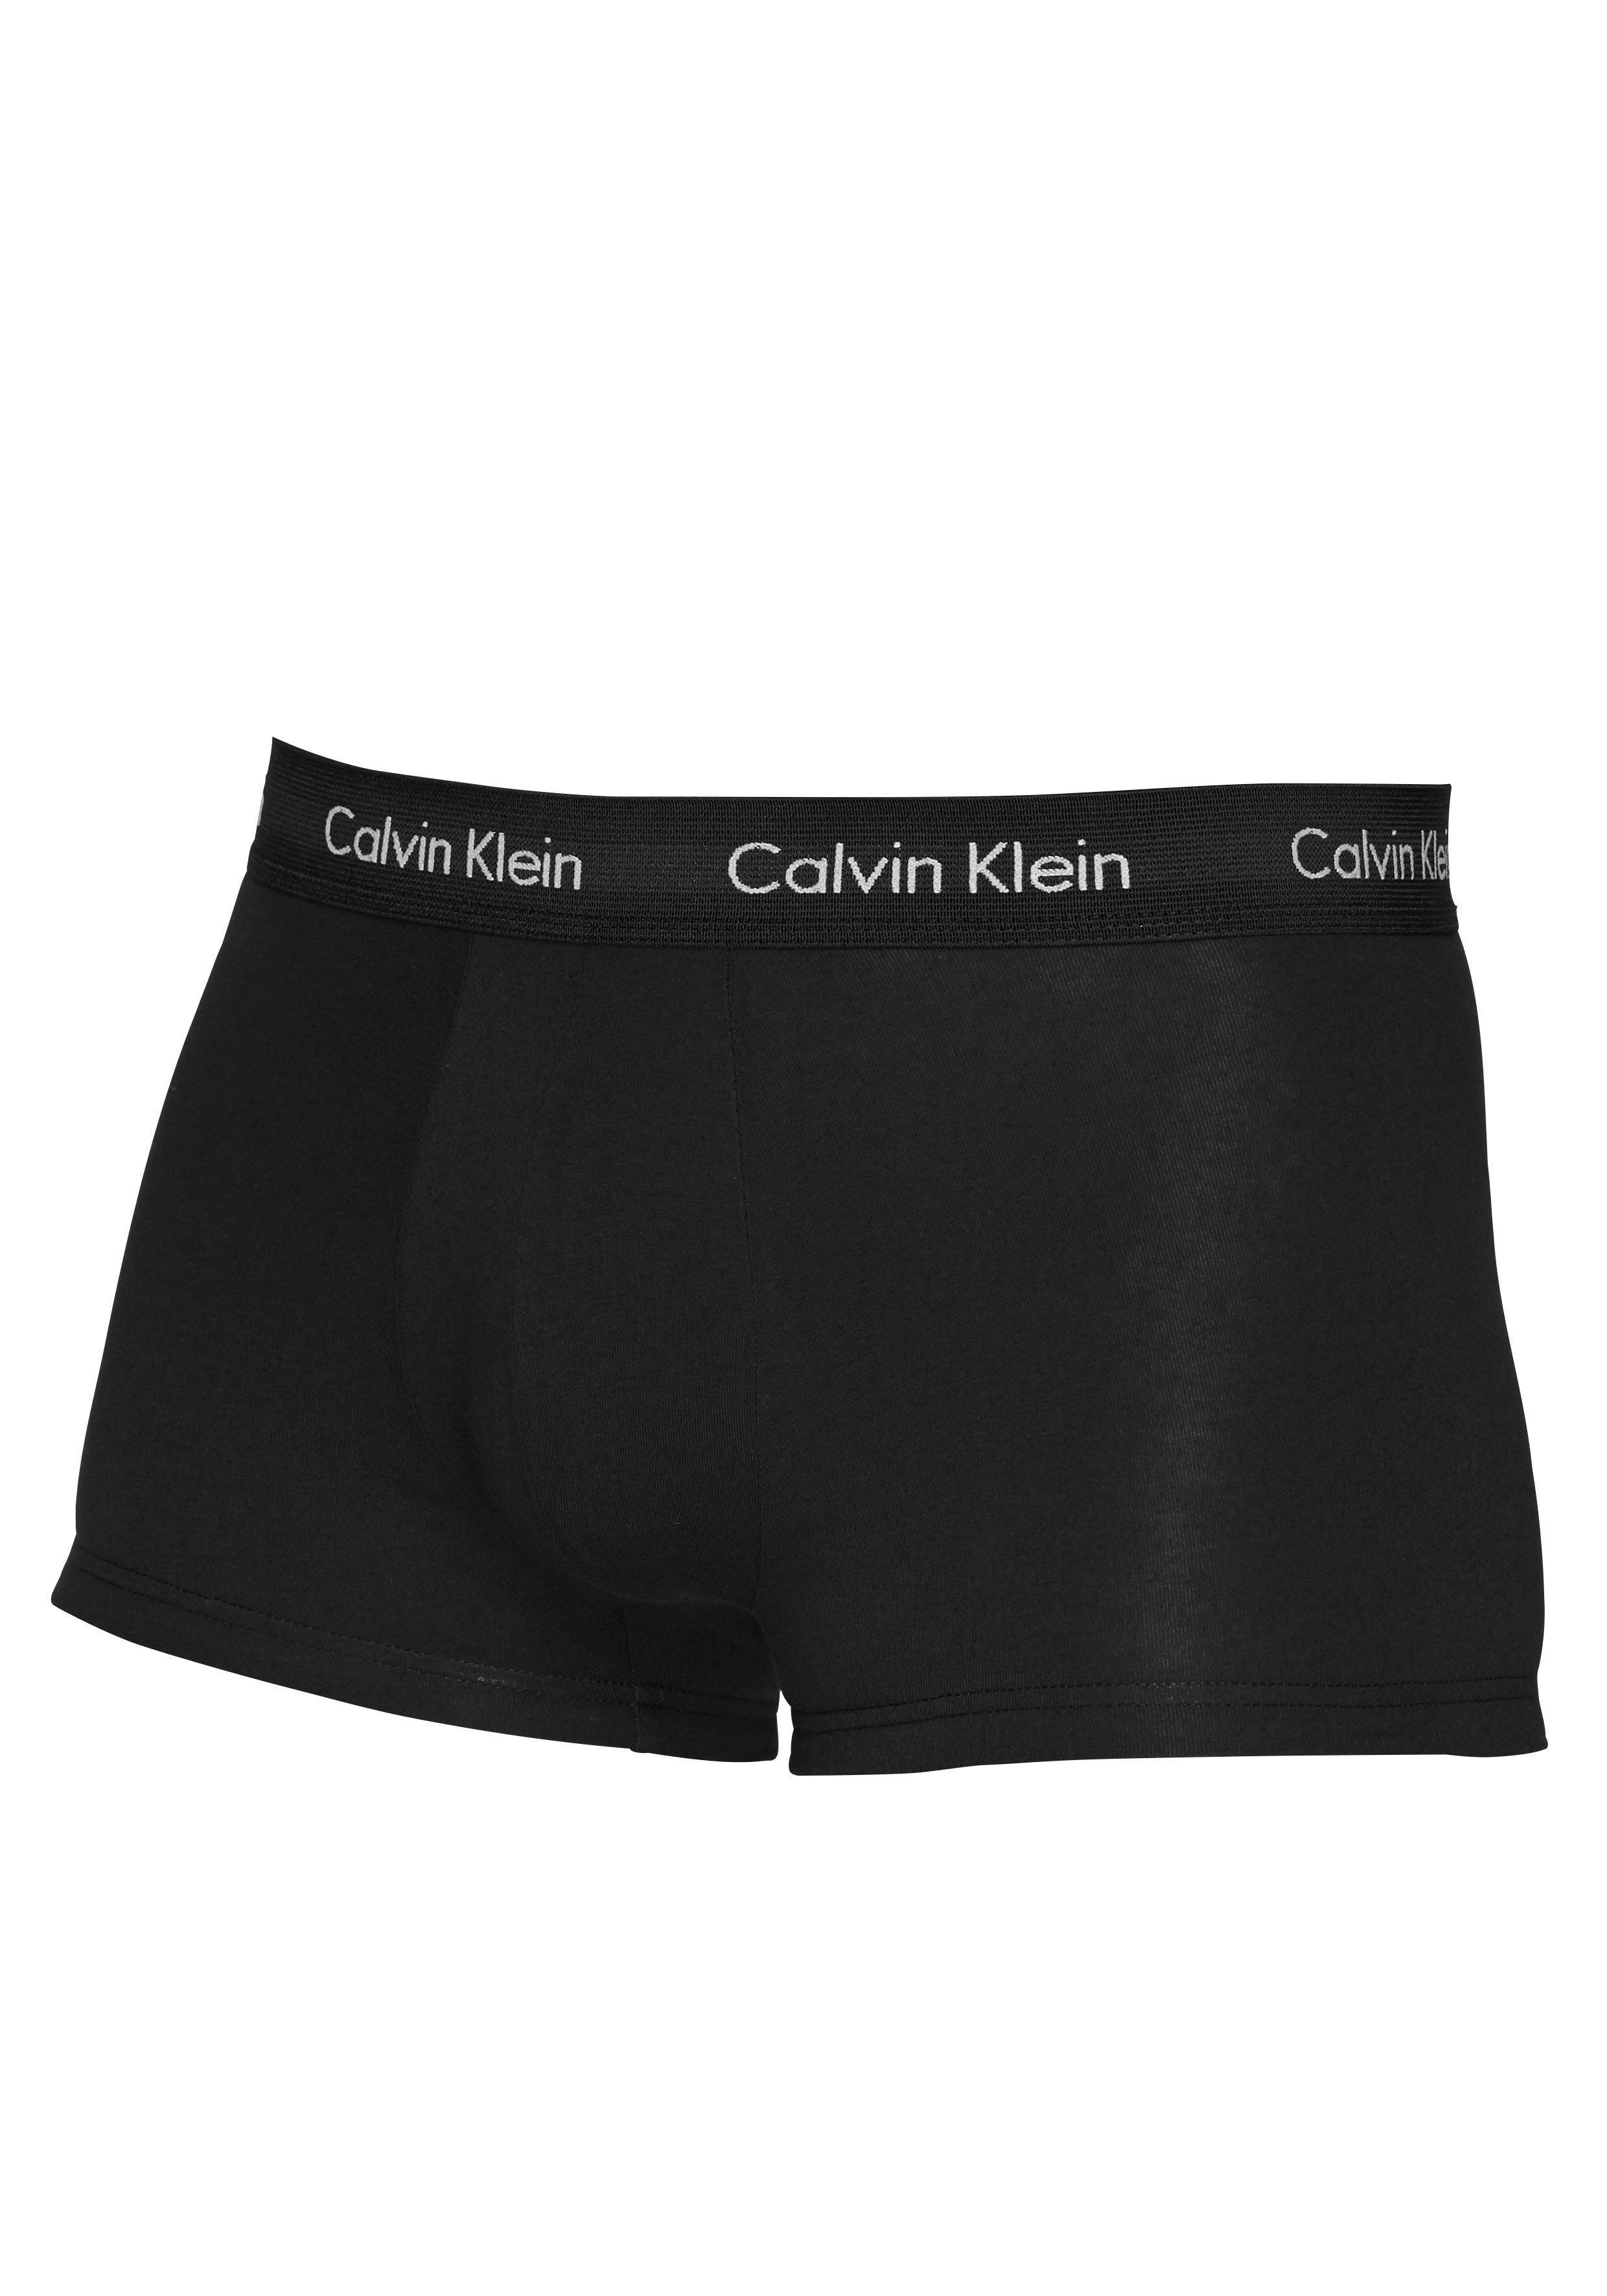 Calvin Klein (3-St) Underwear blautönen in Hipster